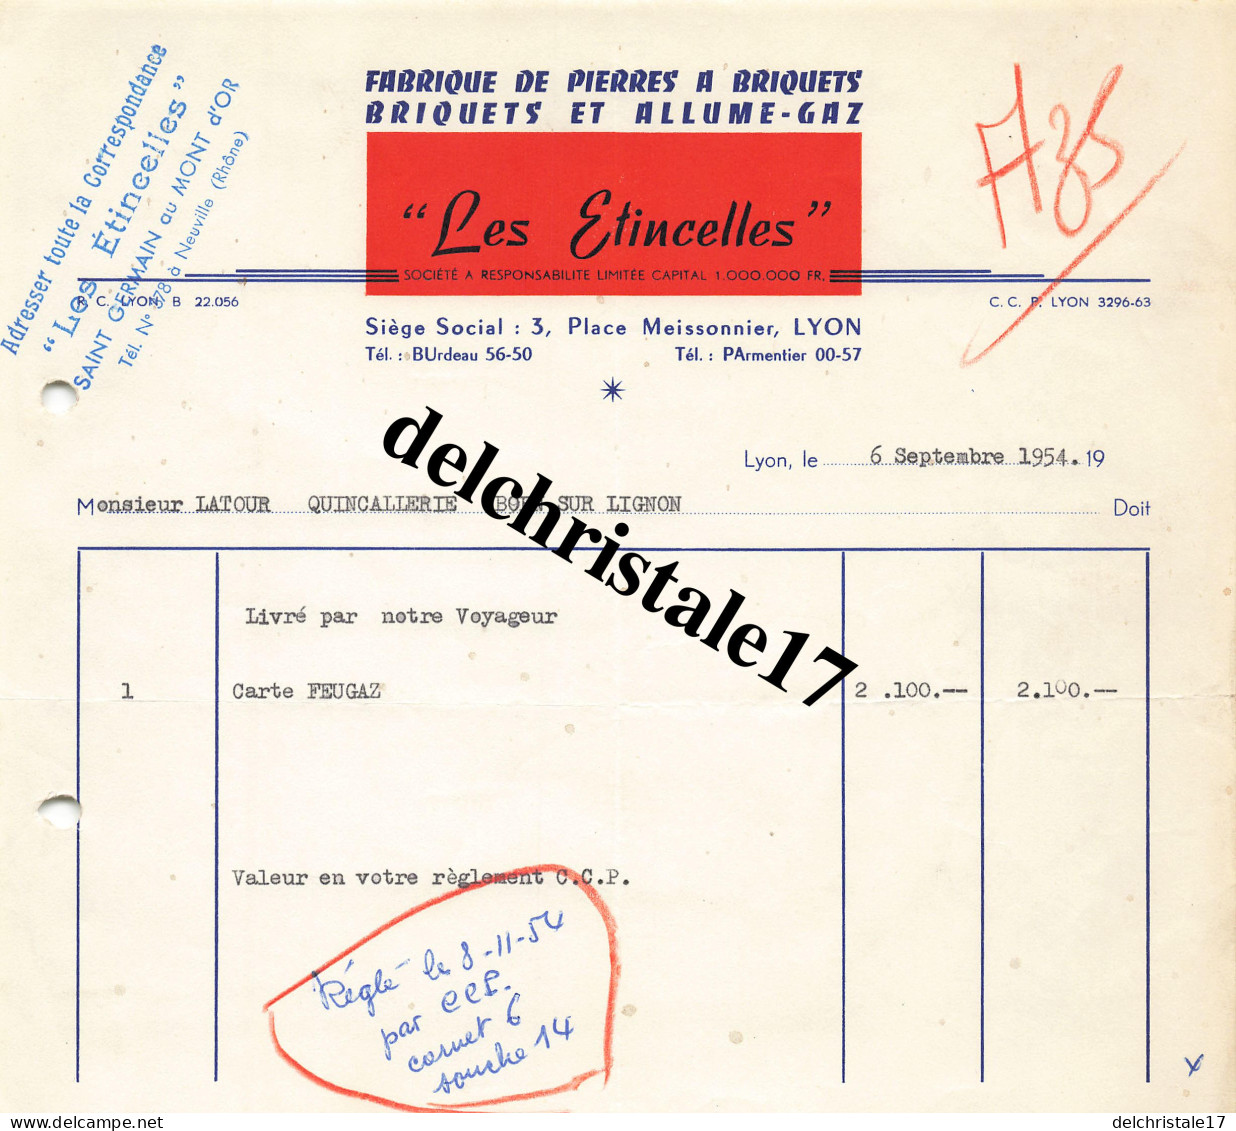 69 0188 LYON RHÔNE 1954 Fabrication De Pierres à Briquets Allume-Gaz "LES ÉTINCELLES" Place Meissonnier à M. LATOUR - Documenten